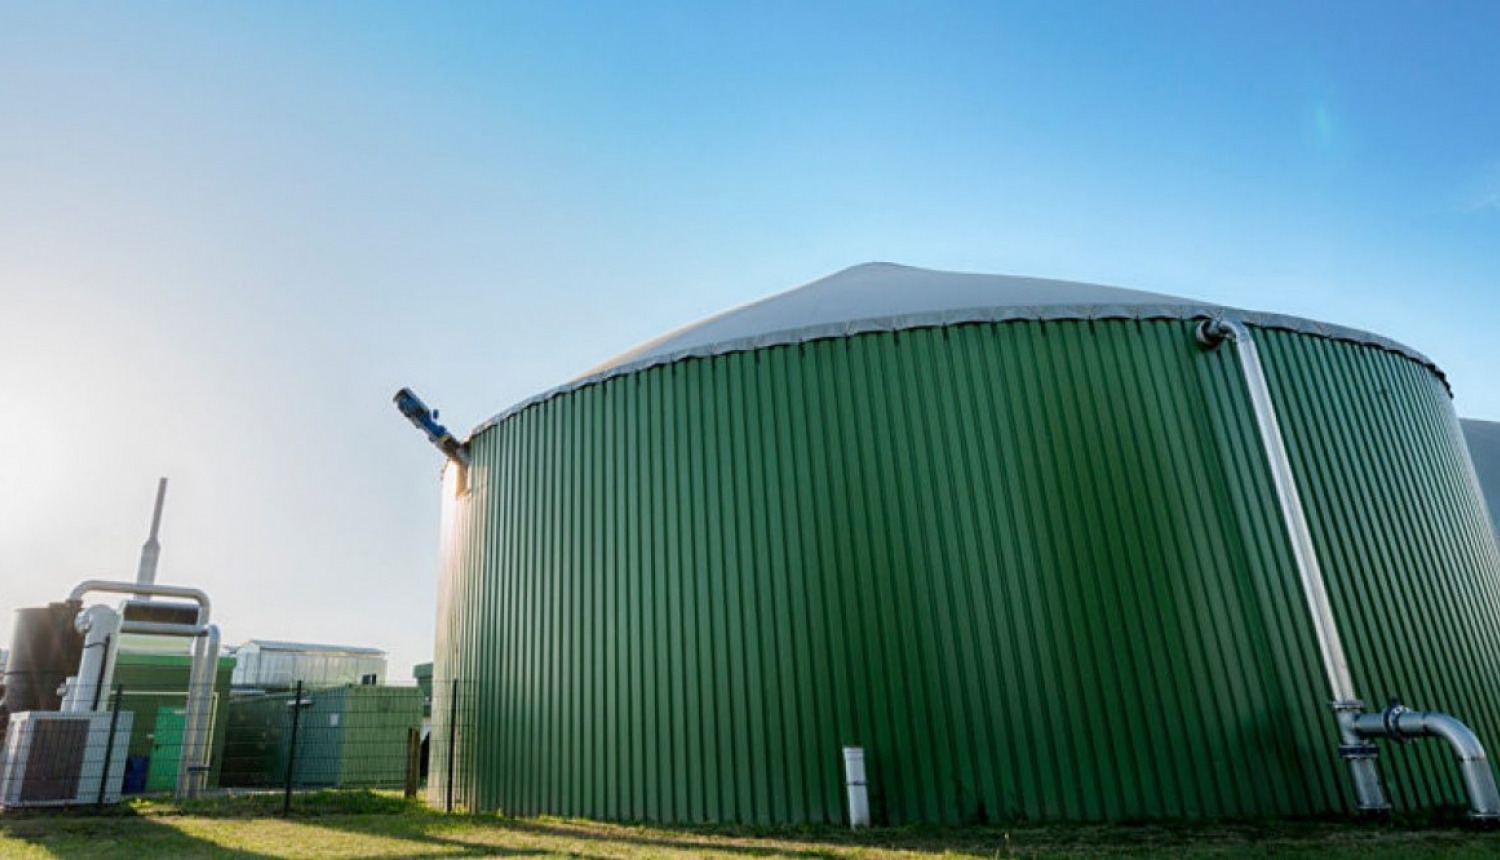 Atbalsta biogāzes un enerģijas ražotnes izveides būvniecības ieceri